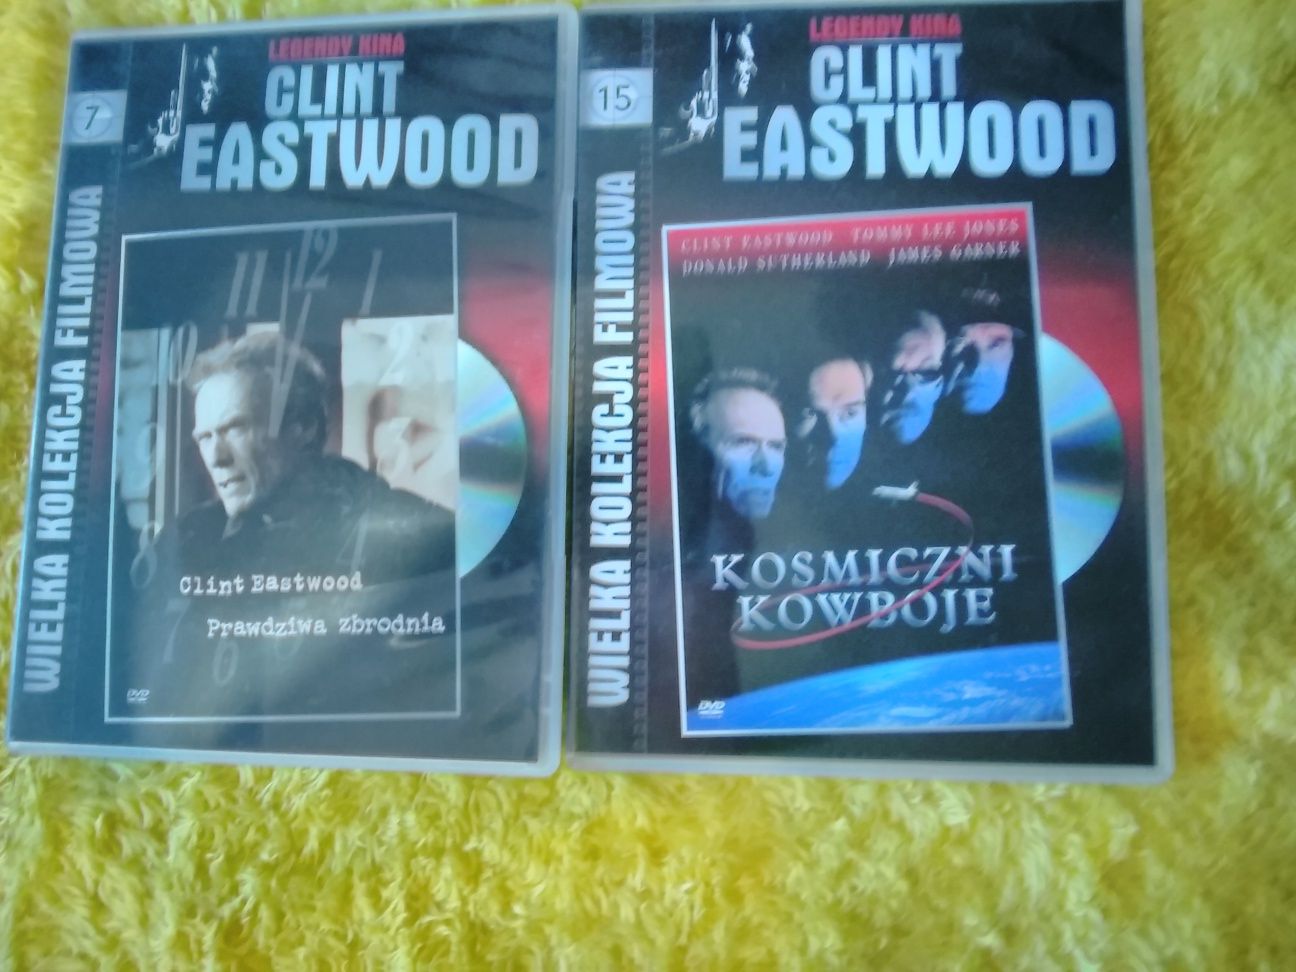 Clint Eastwood, DVD filmy Kosmiczni kowboje i Prawdziwa zbrodnia.